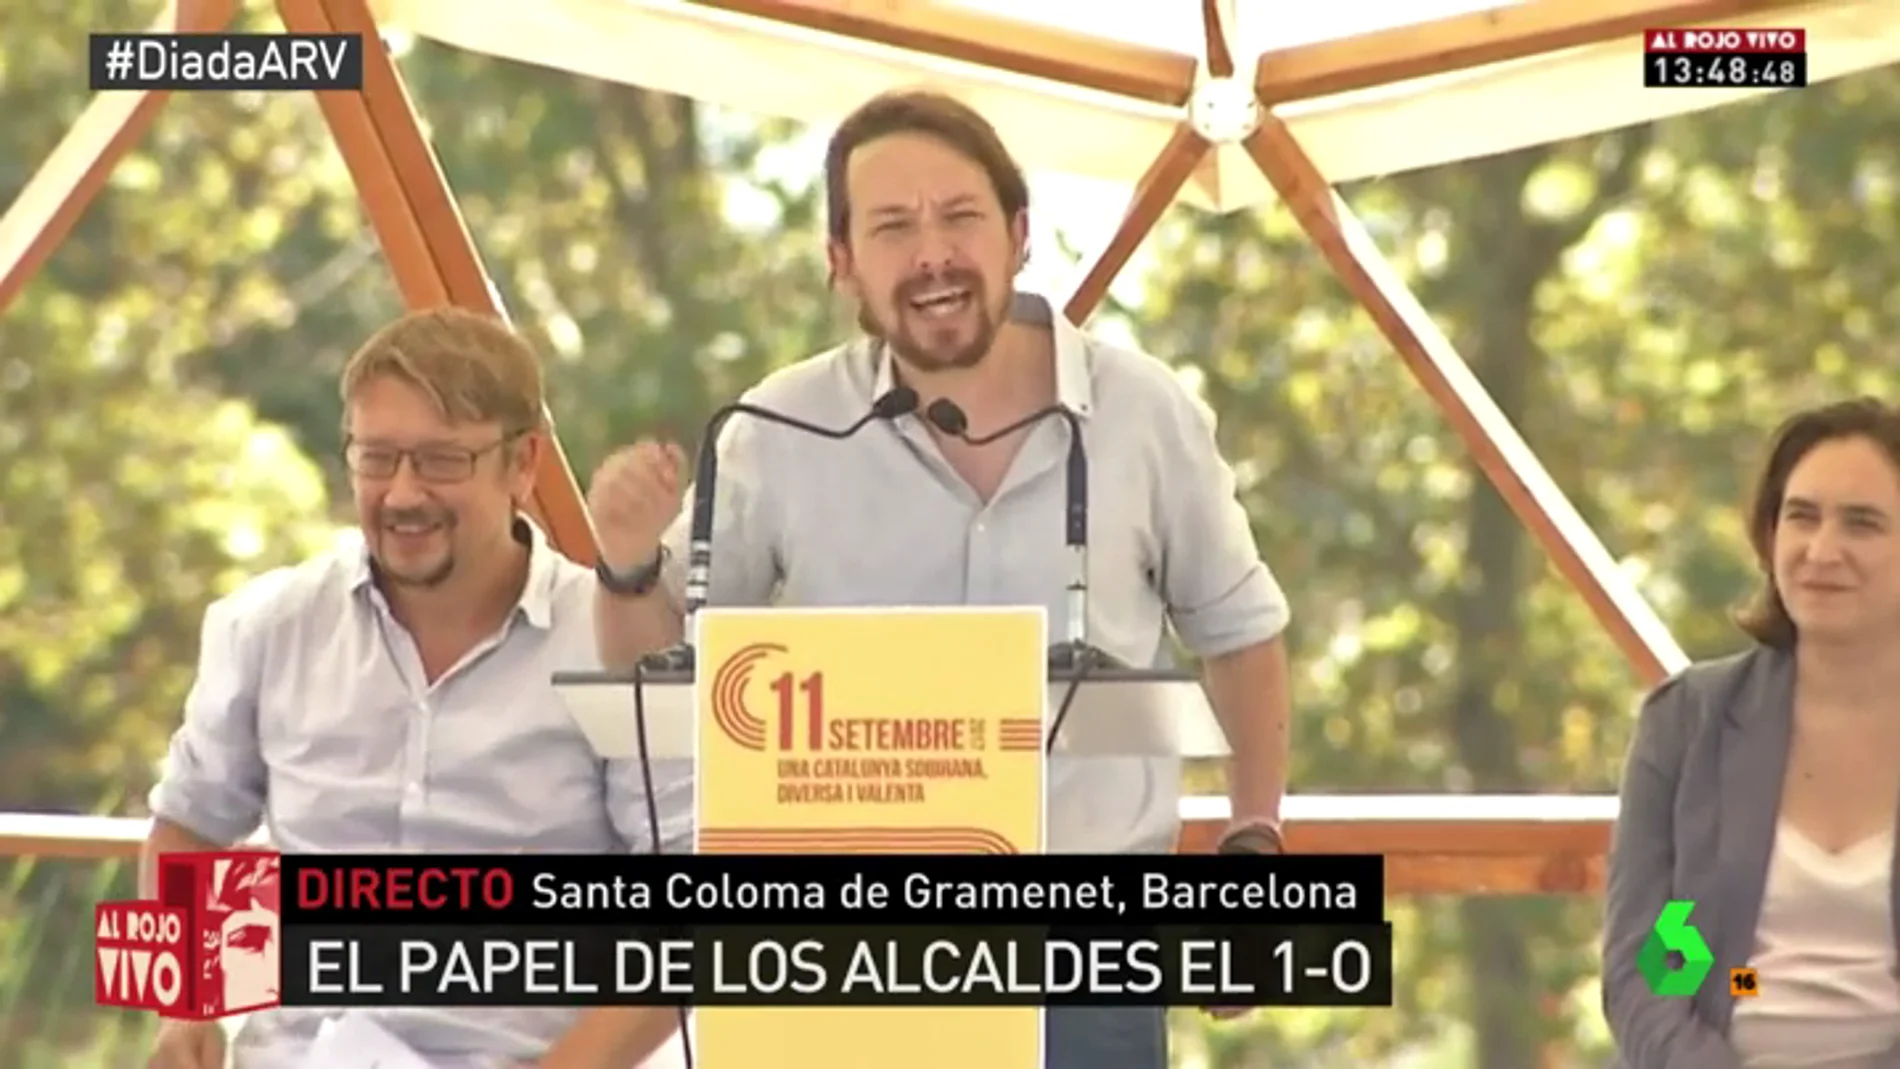 Pablo Iglesias: "Sánchez ganó diciendo que España es una país plurinacional y los militantes estaban de acuerdo con nosotros"